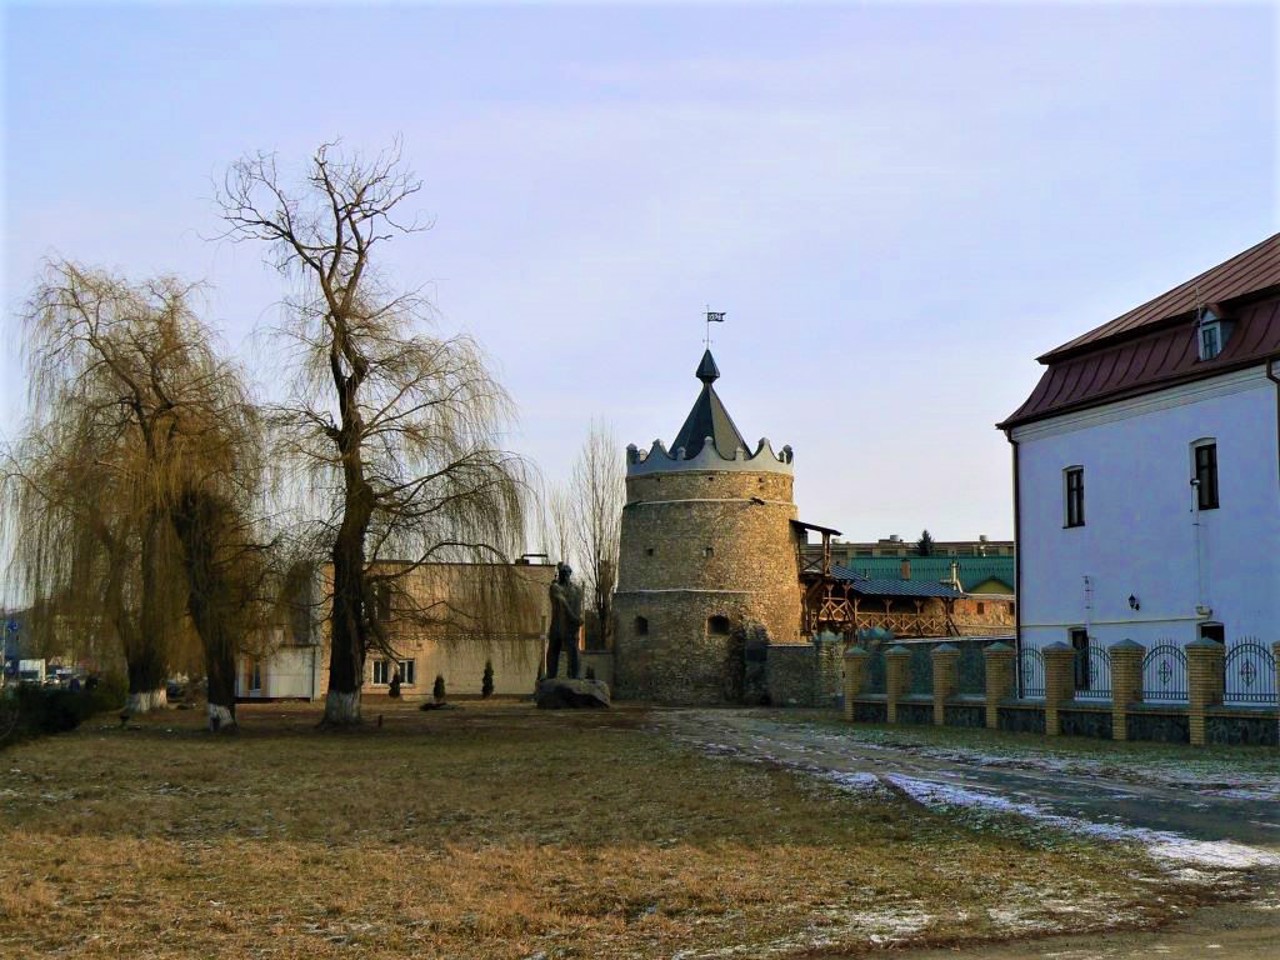 Доминиканский монастырь (Замок), Летичев